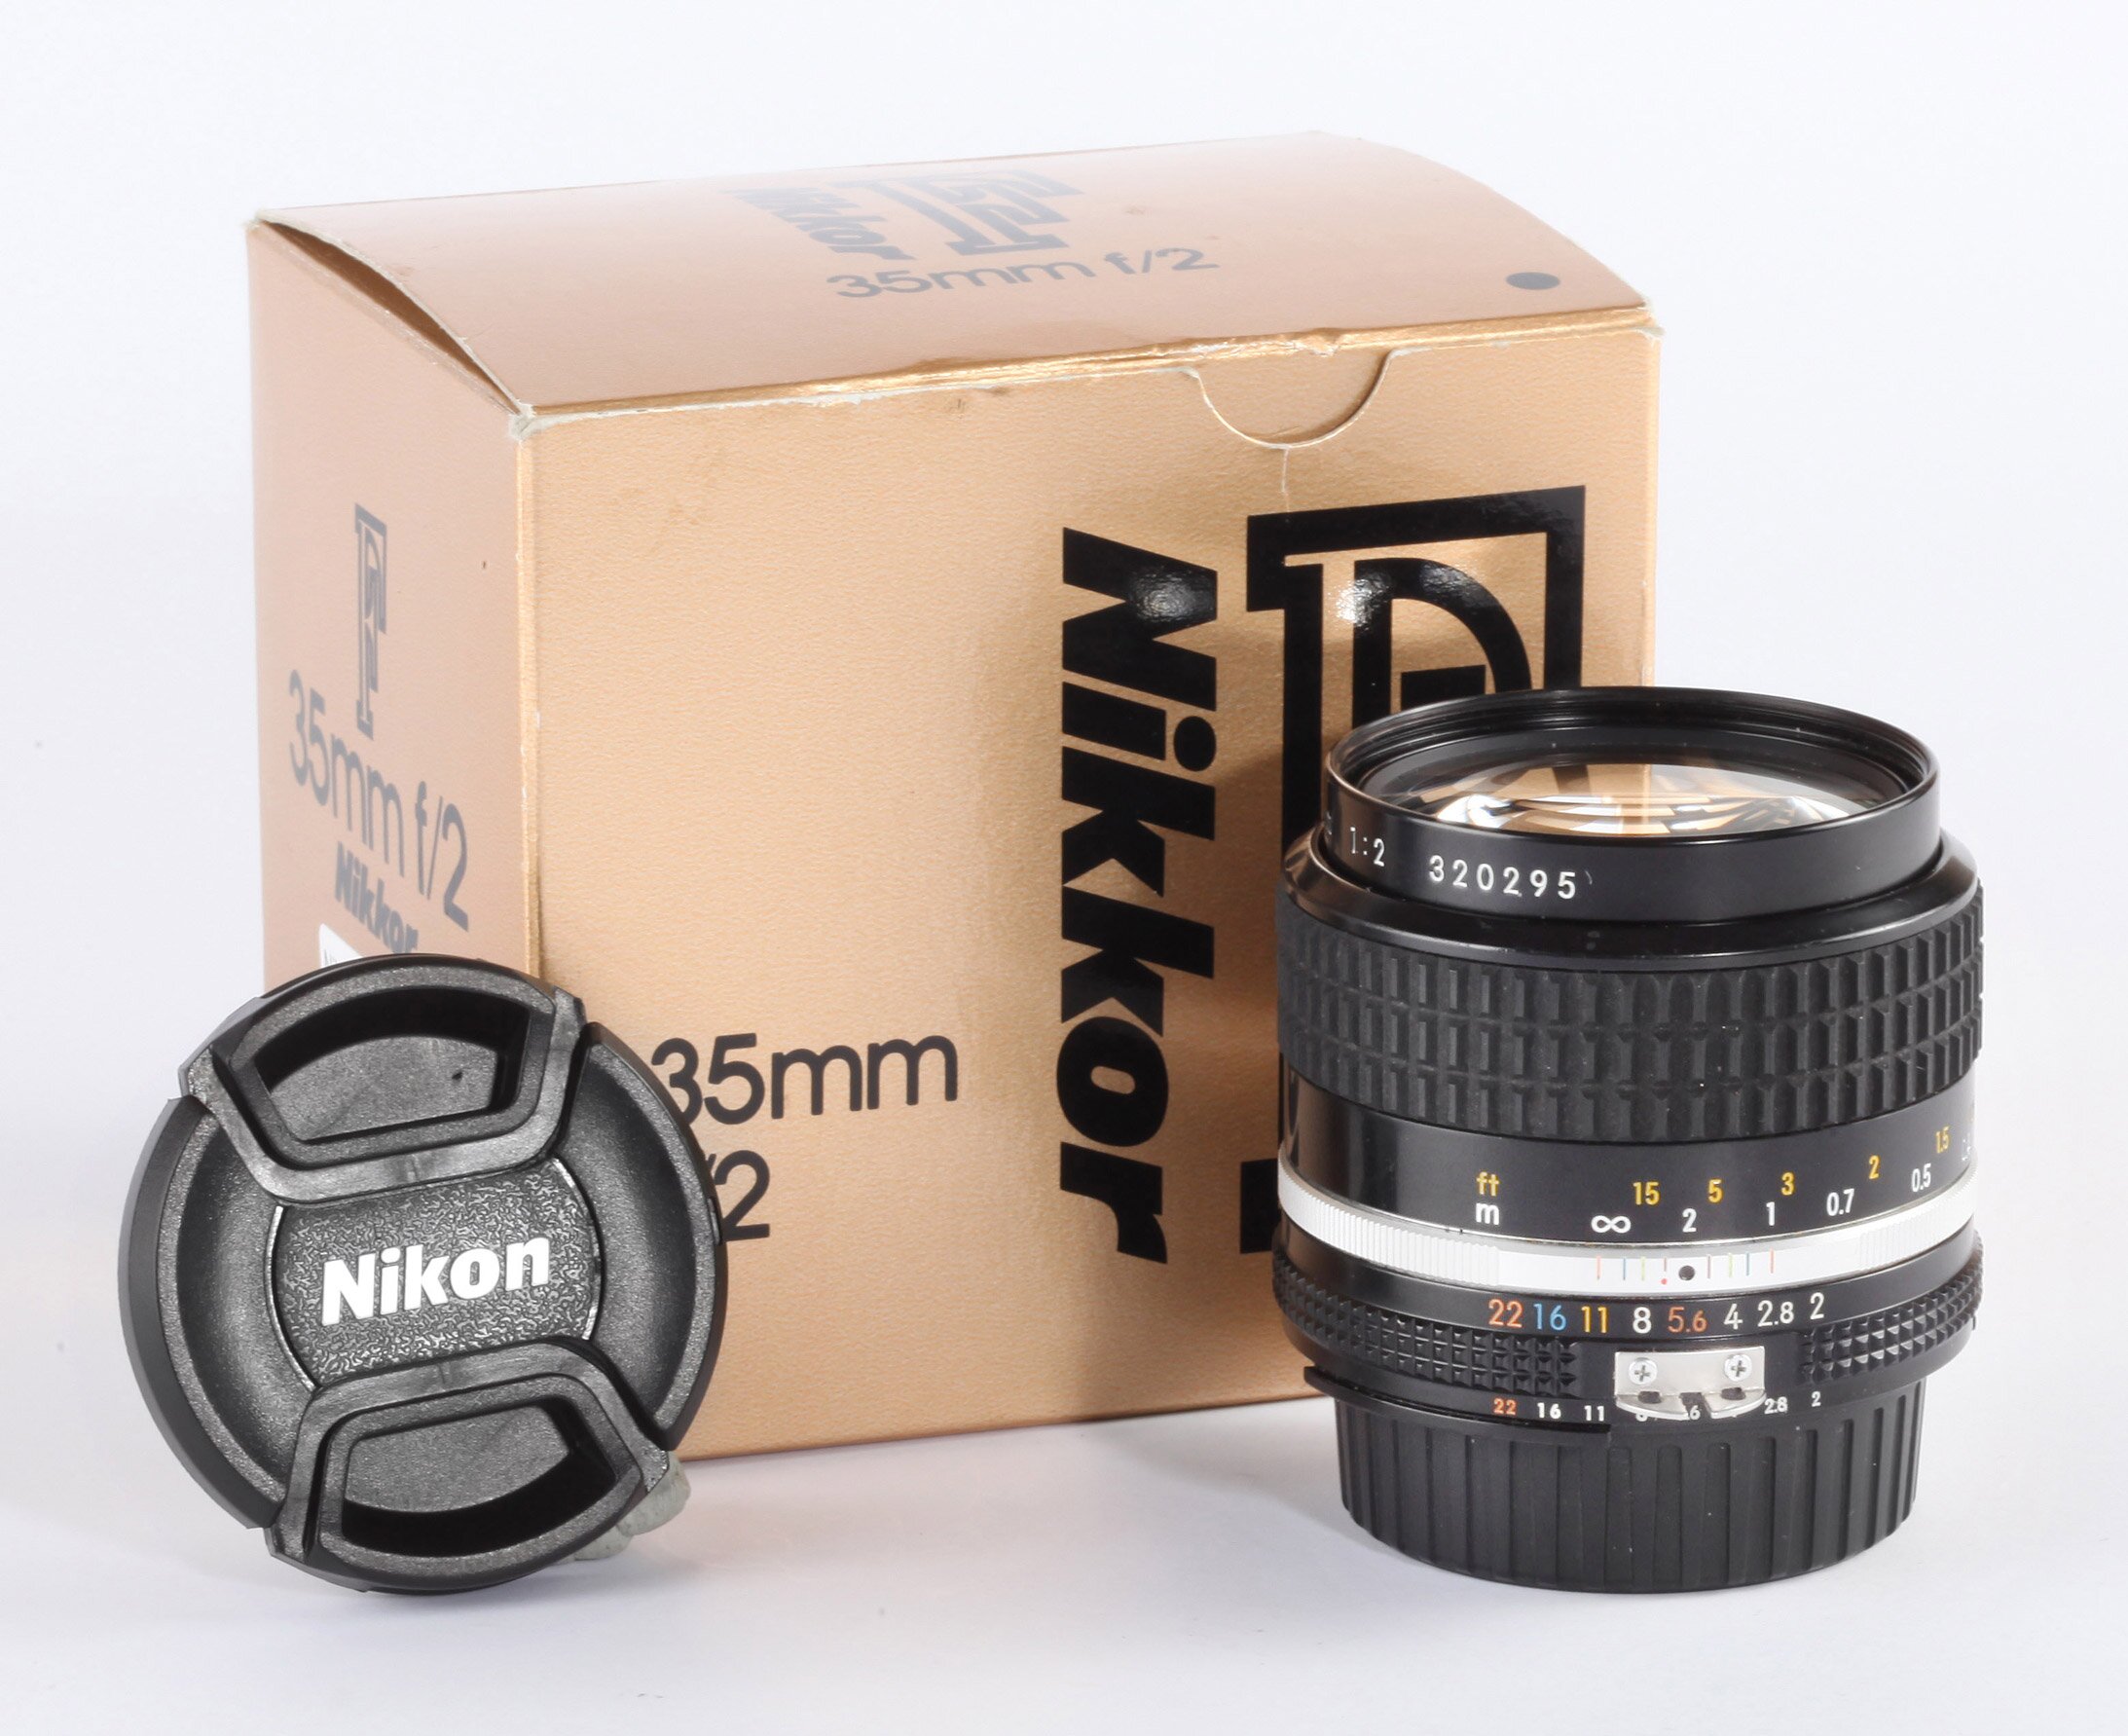 Nikon Nikkor 35mm/2 AiS